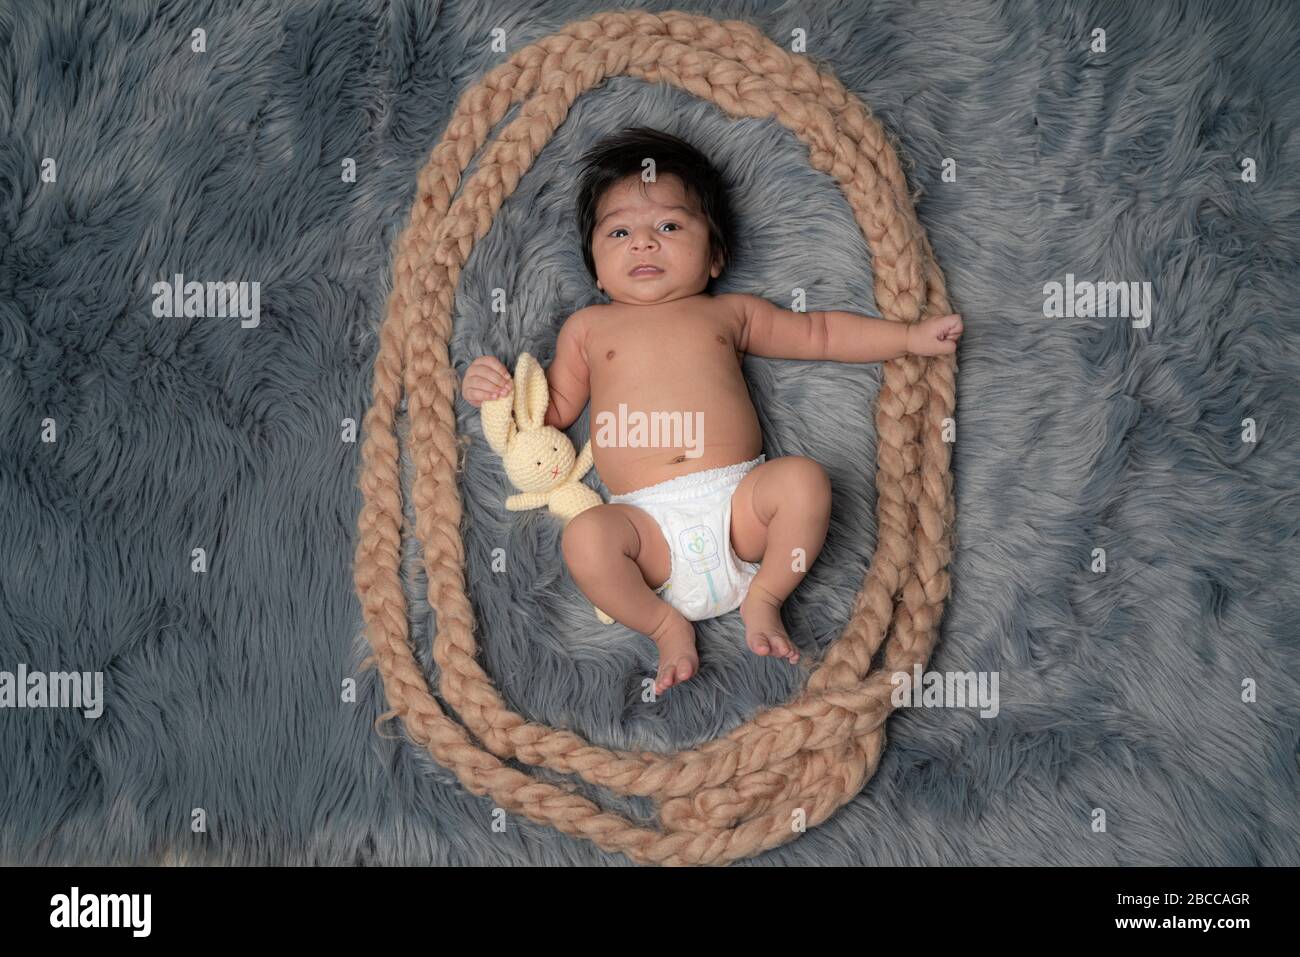 Portrait d'un bébé nouveau-né, 1 mois, dans un Diaper, cheveux noirs, yeux bleus sur une couverture en fourrure grise tenant un ours en peluche et souriant. Famille, amour, ch Banque D'Images